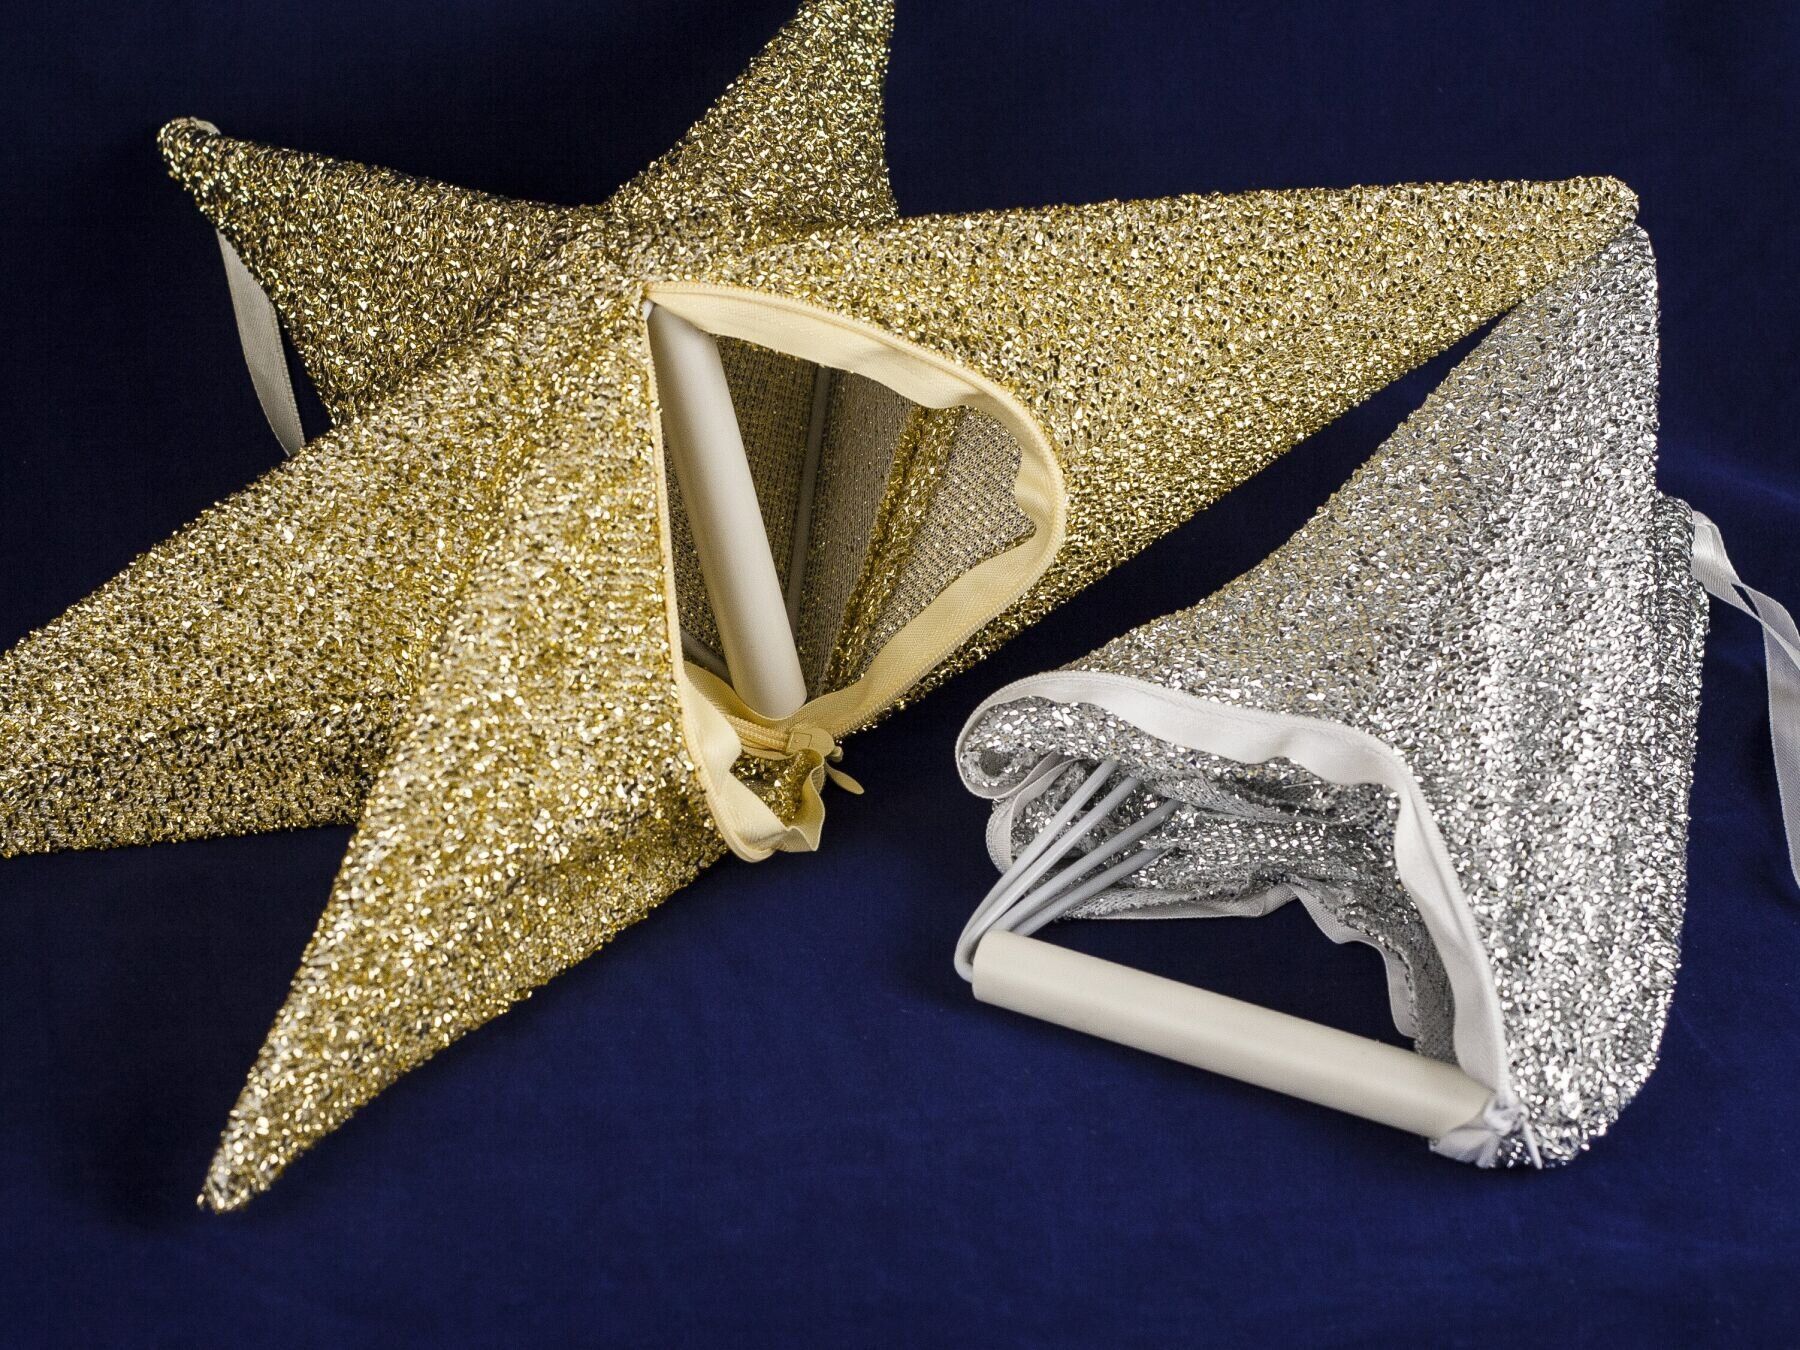 Новогодний декор подвесная звезда из ткани, желтое золото, 65 см